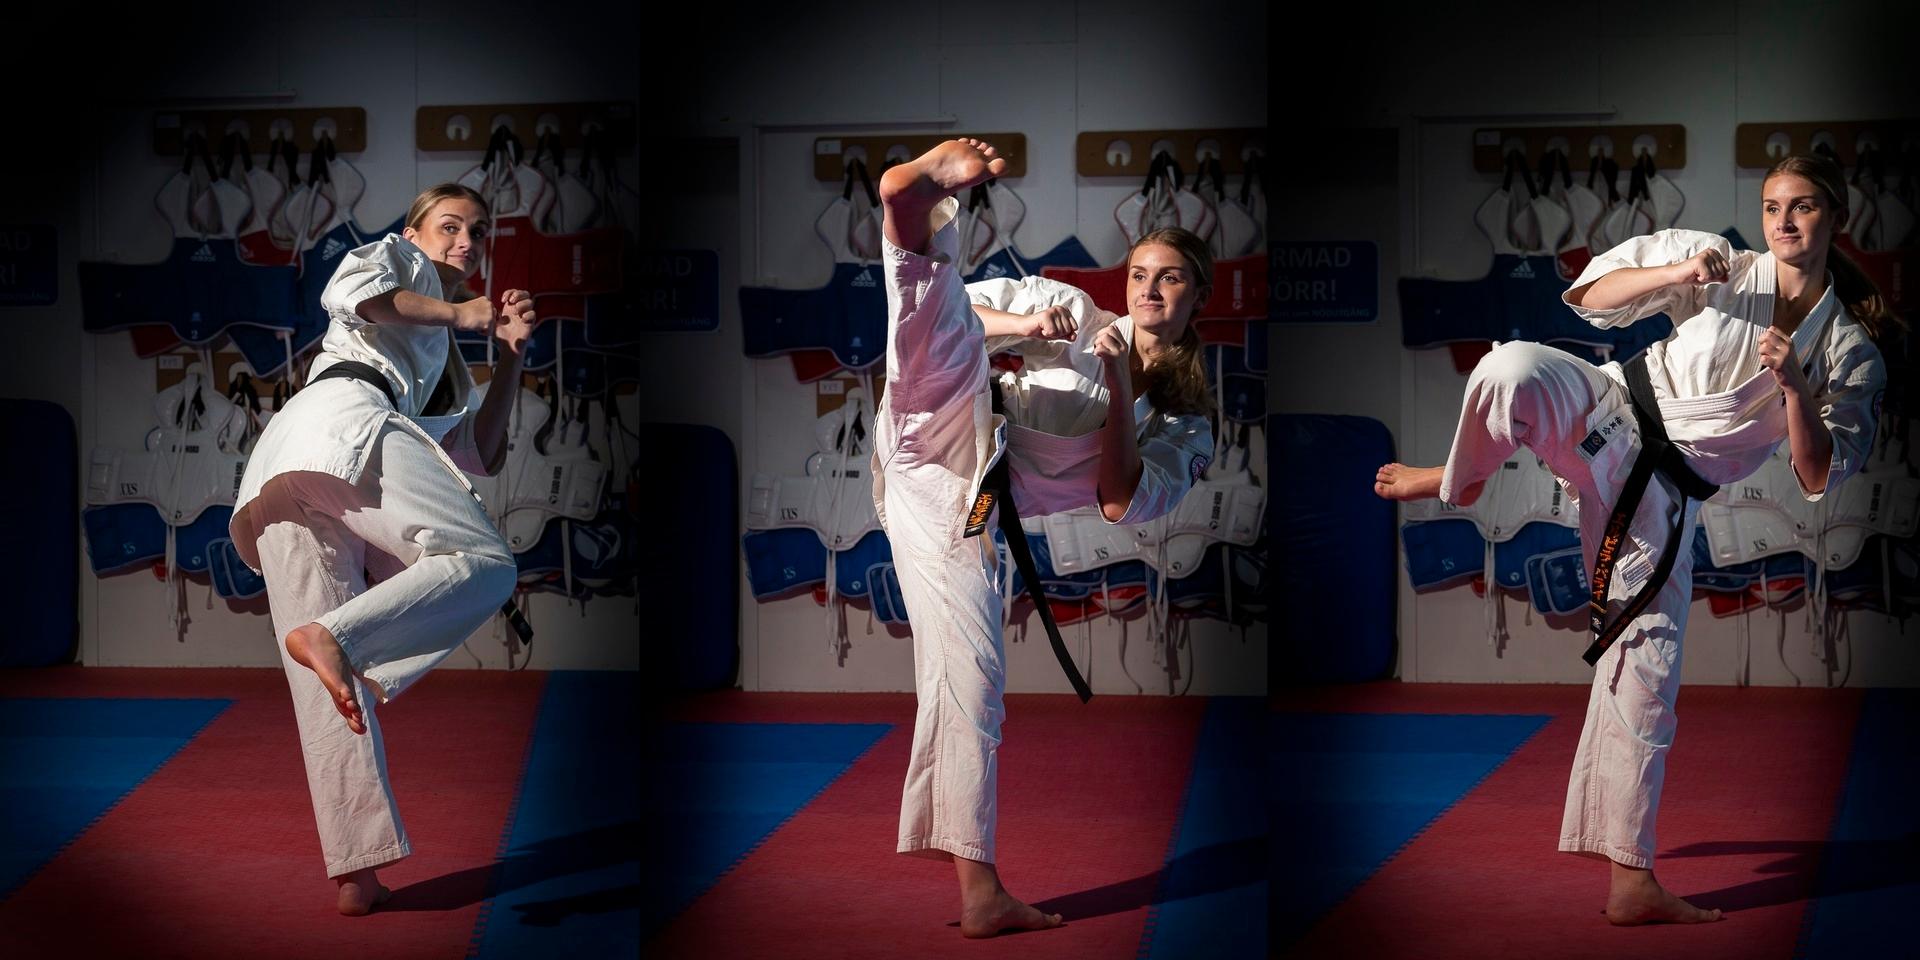 Kyokushin karate är en fullkontaktssport där sparkar och slag är tillåtna. Att slå mot huvudet är däremot inte tillåtet.